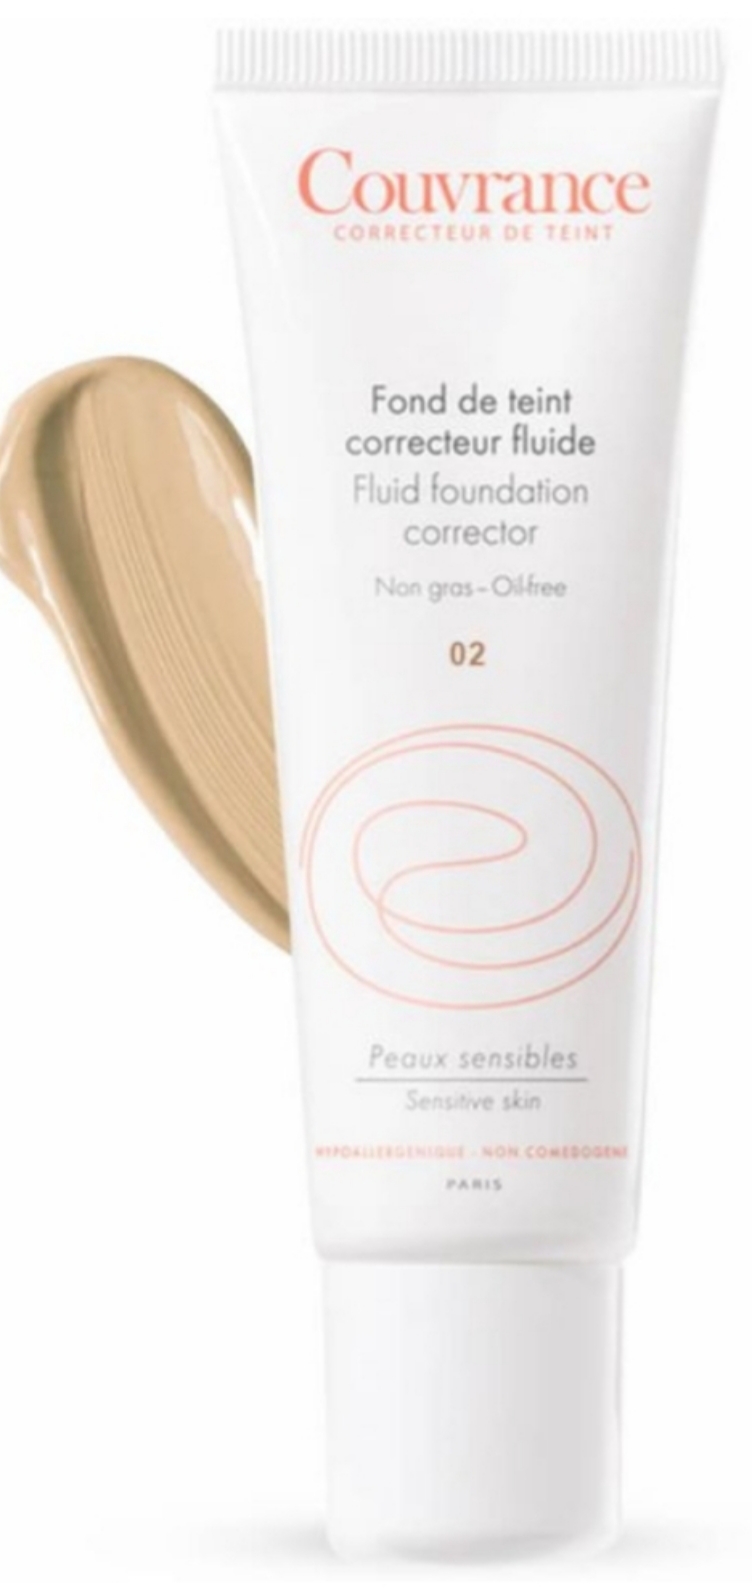 کرم پودر وپایه های آرایشی AVENE Fluide Foundation Corrector for Sensitive Skin SPF 15 (Couvrance Fond de Teint Correcteur Fluide SPF 15)